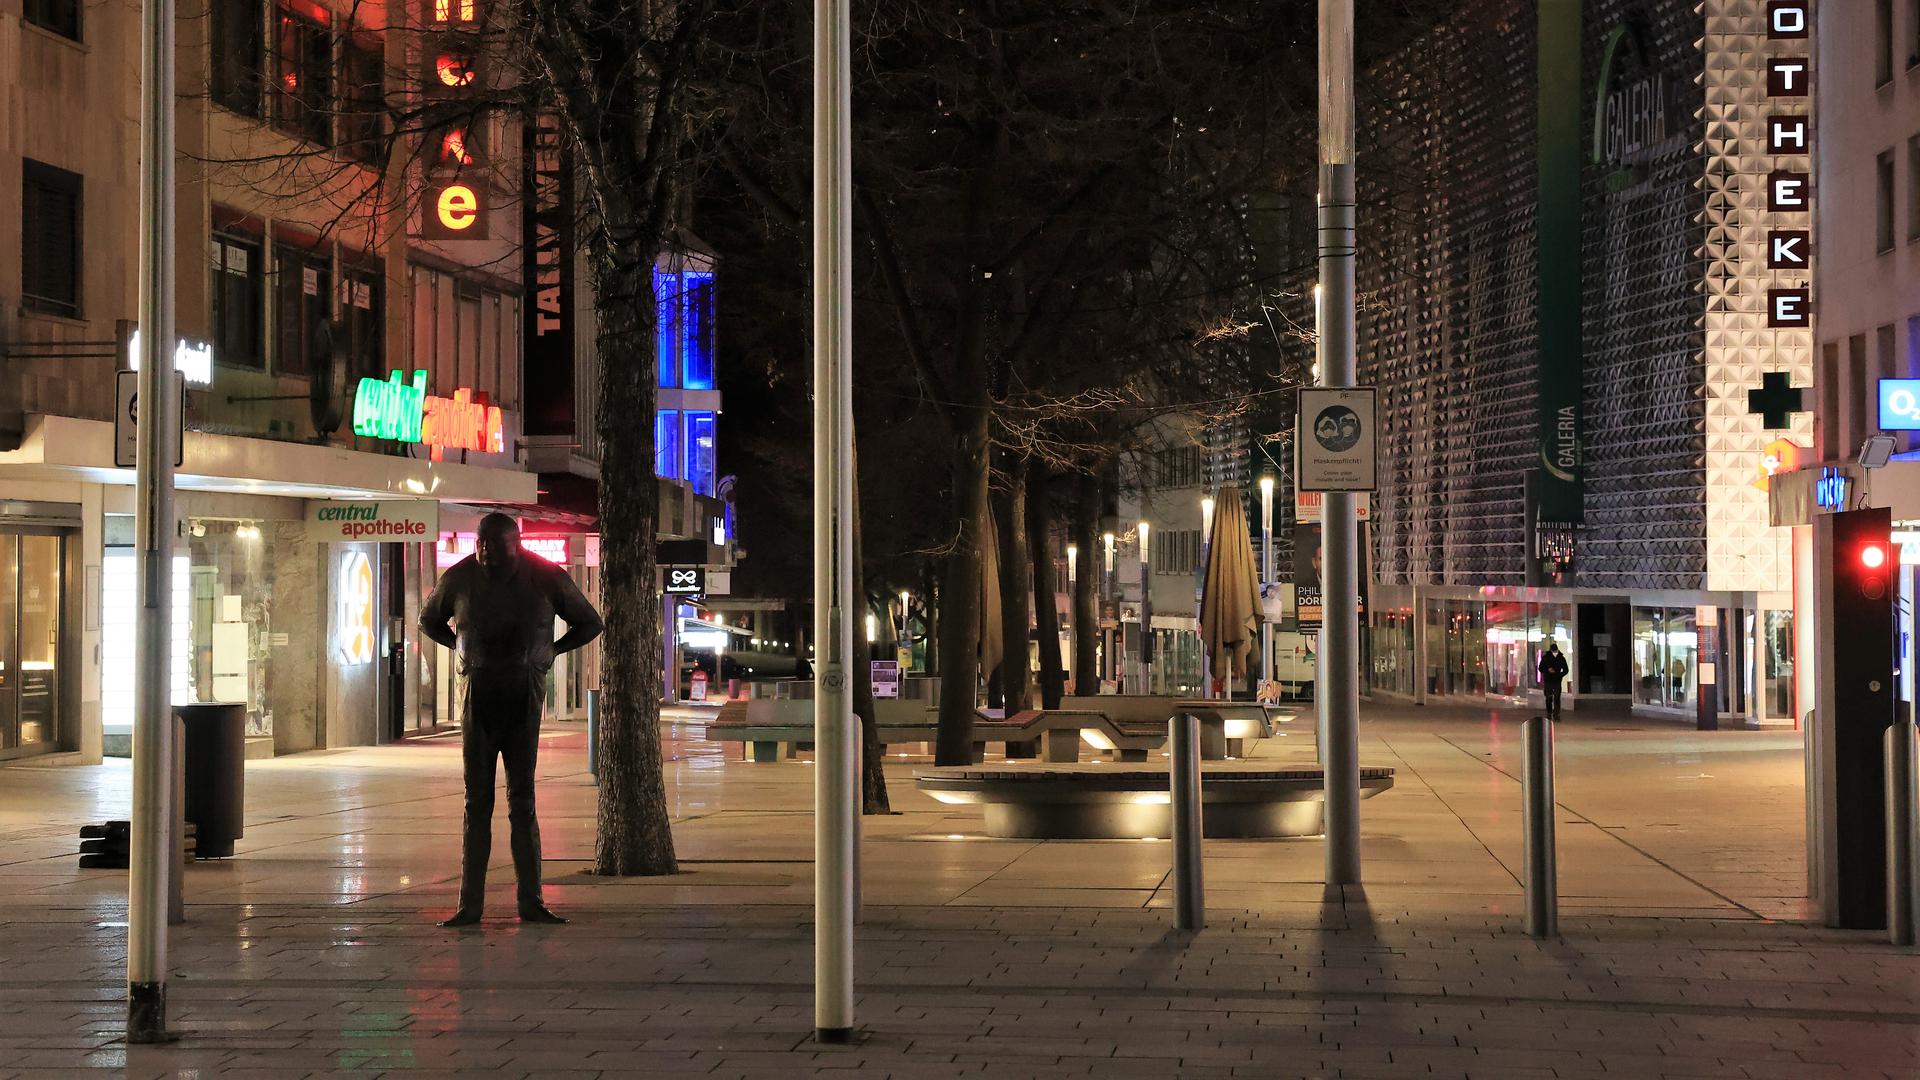  Nacht und Leere: Nach dem Ende der nächtlichen Ausgangssperre in Pforzheim hält sich in der City der Andrang noch in Grenzen. Die Stellung hält „Der Dicke“ am westlichen Ende der Fußgängerzone.